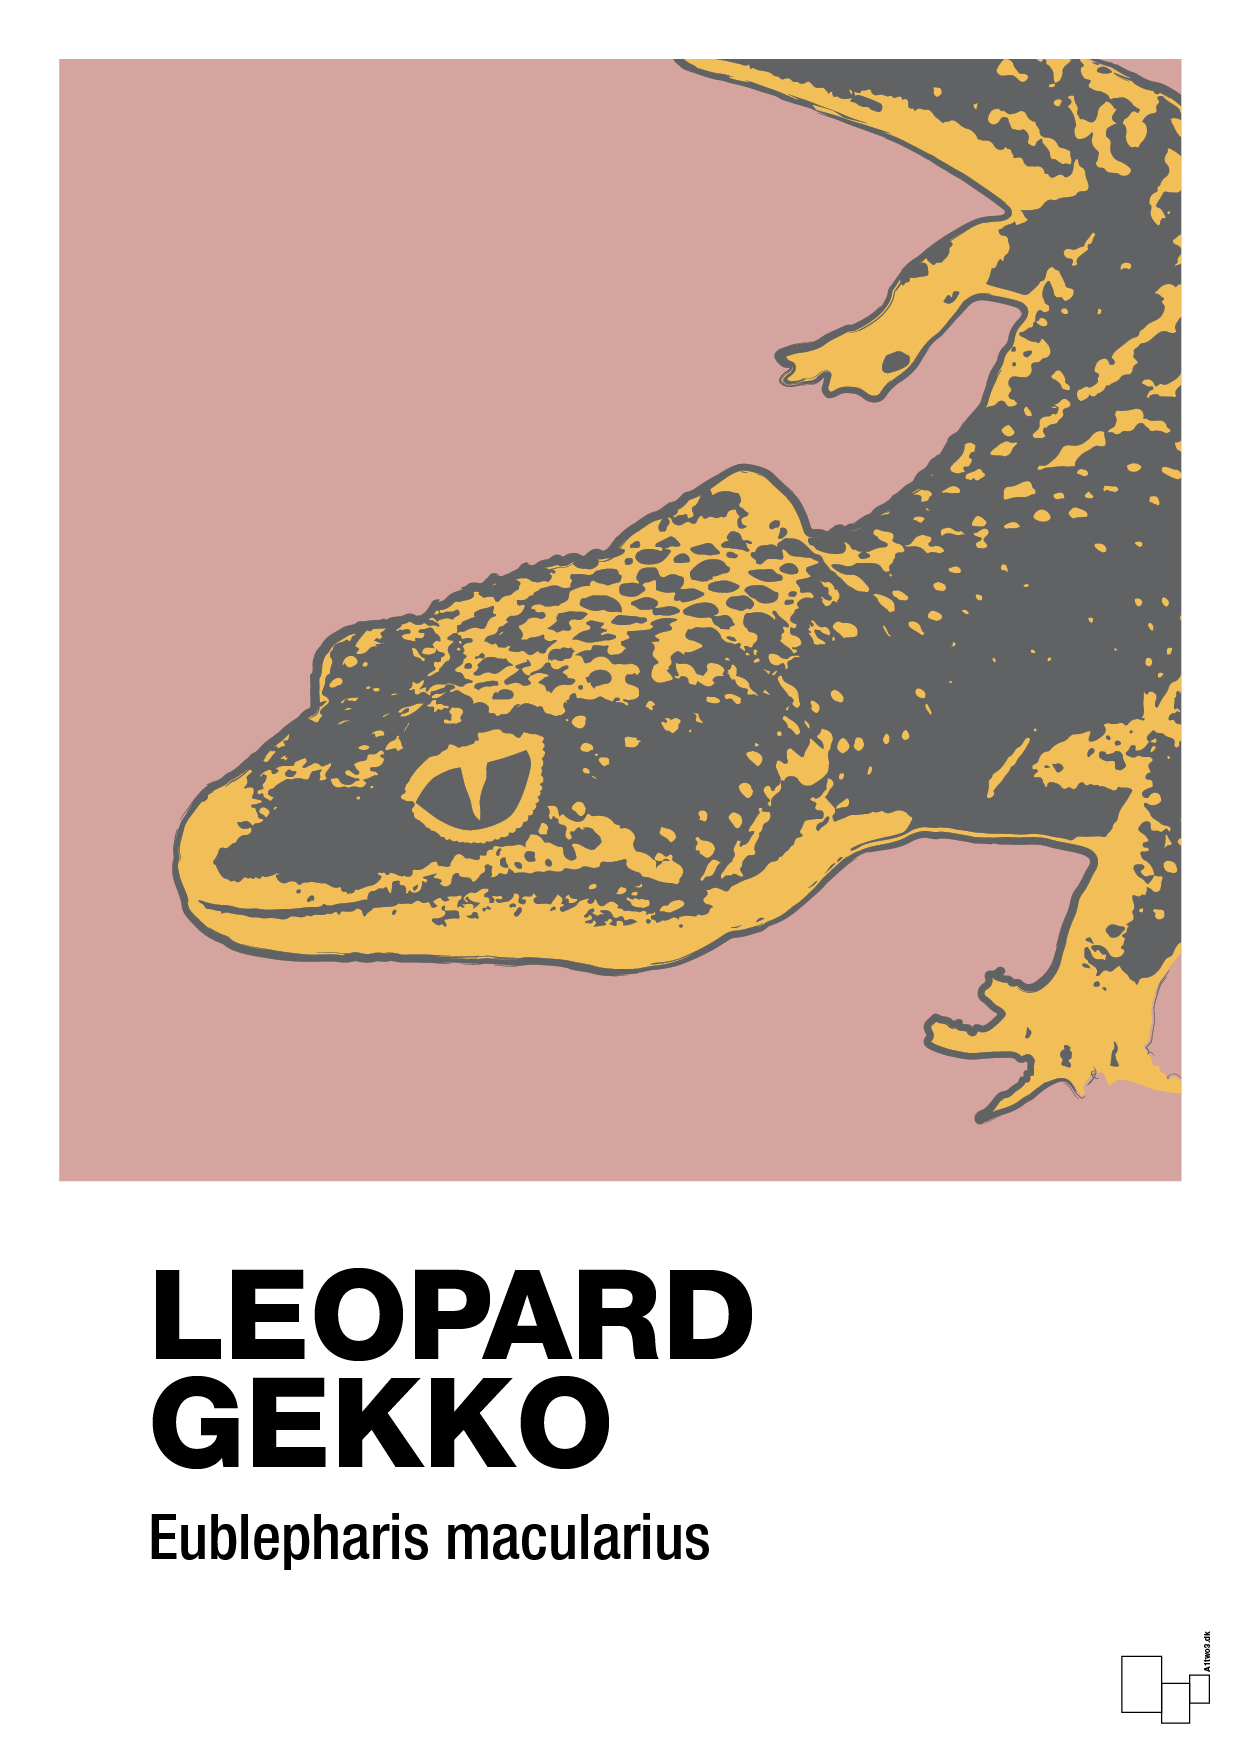 leopard gekko - Plakat med Videnskab i Bubble Shell